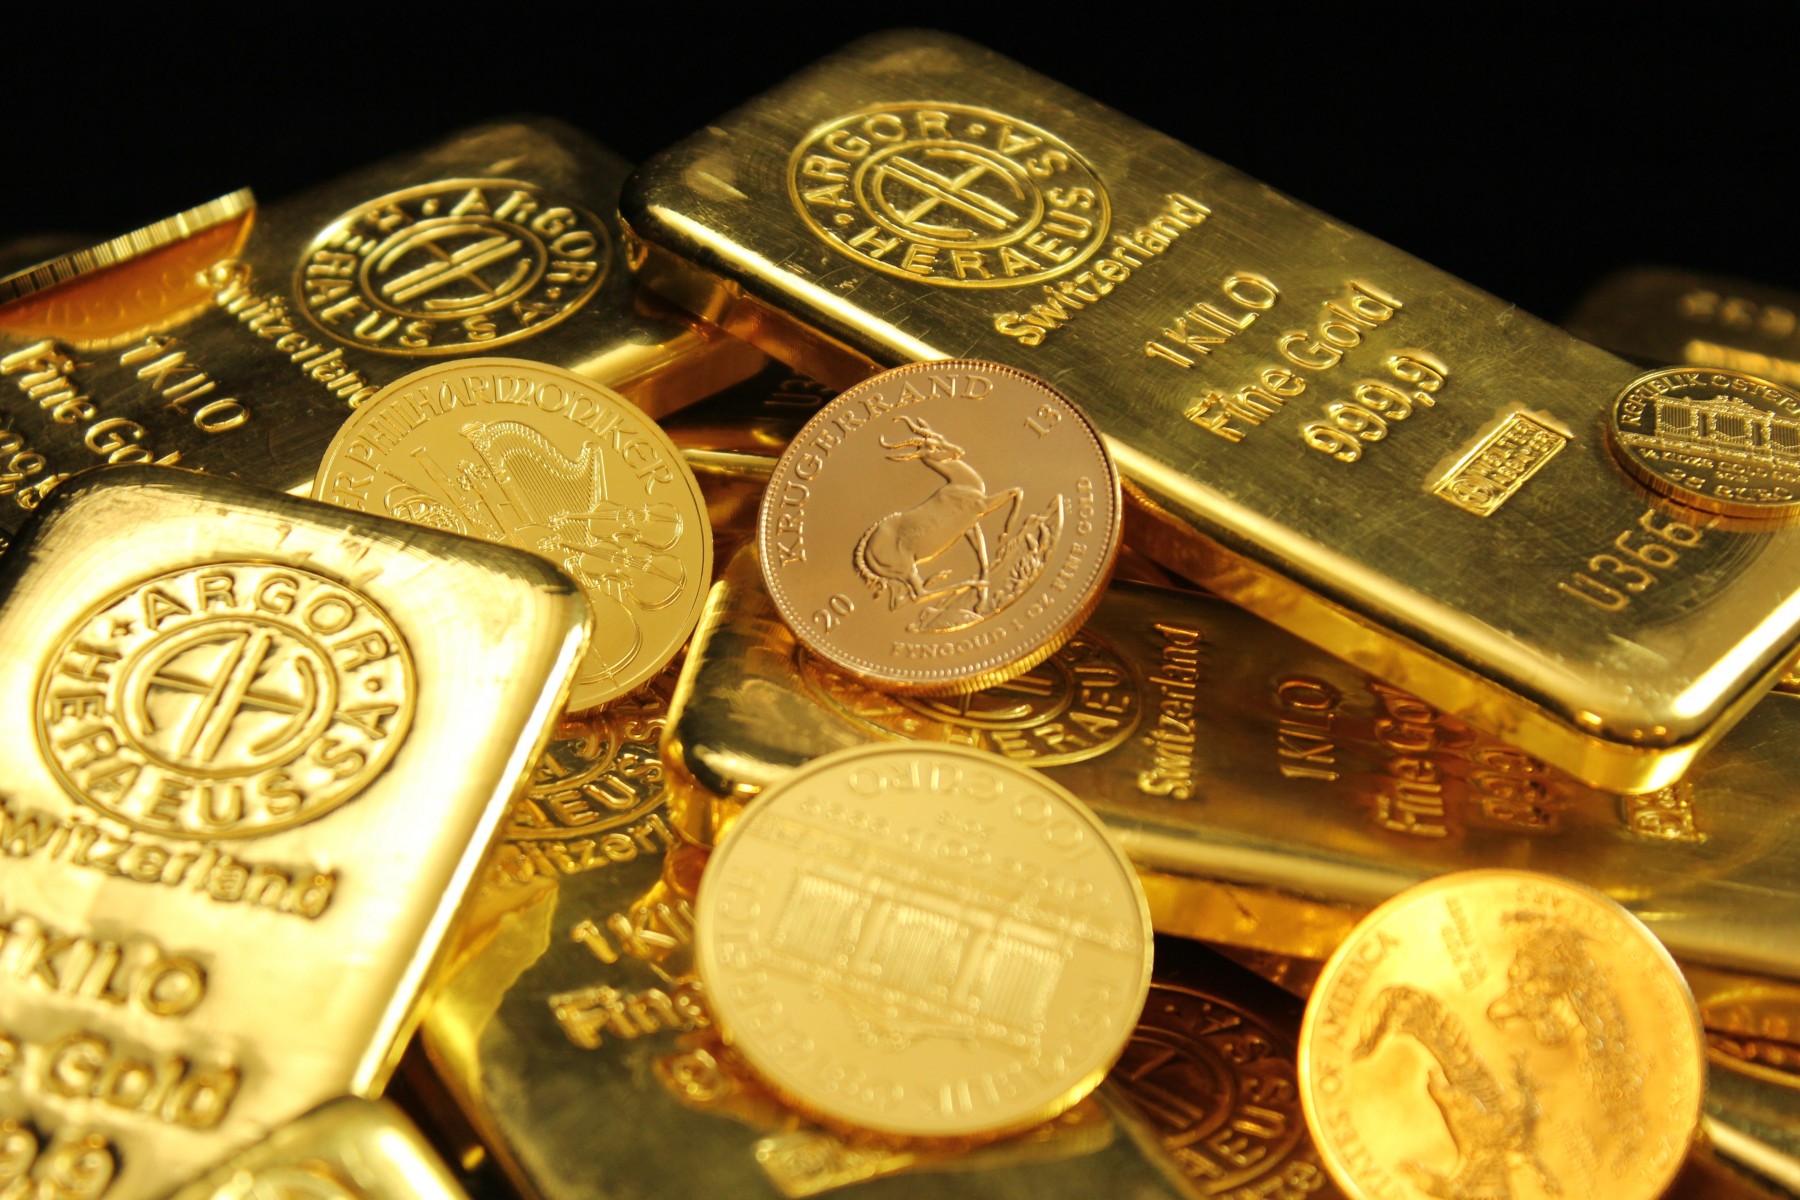 Mengenal Lebih Jauh Angsuran Emas Antam : Syarat, Prosedur, dan Keuntungannya